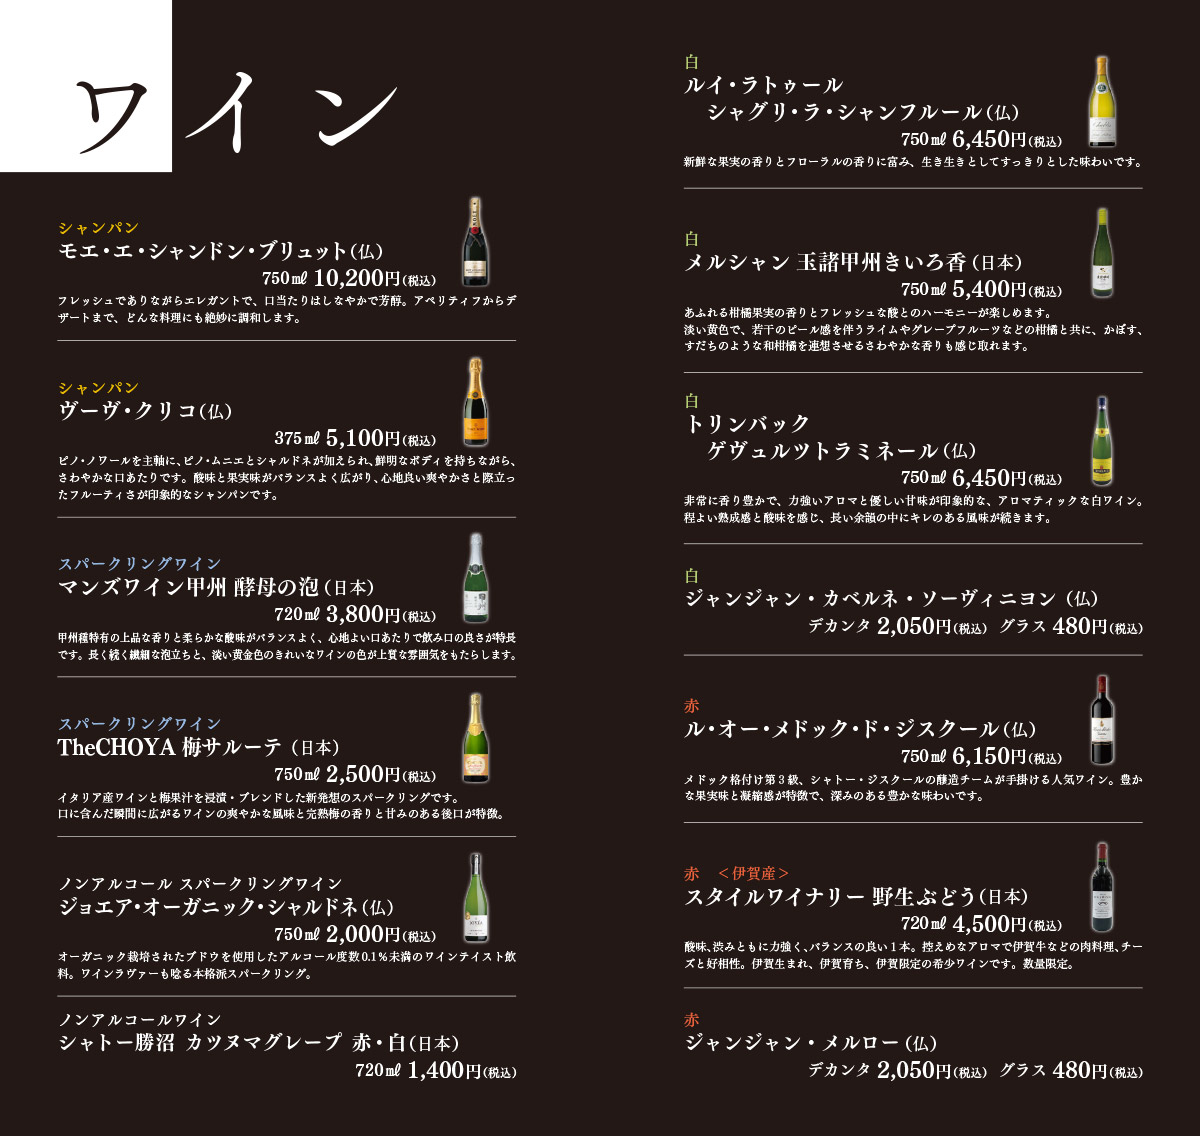 ワインリスト。シャンパン、スパークリング、ノンアルコール、白、赤を揃えています。地元伊賀で作られた珍しい赤ワインも是非ご賞味ください。